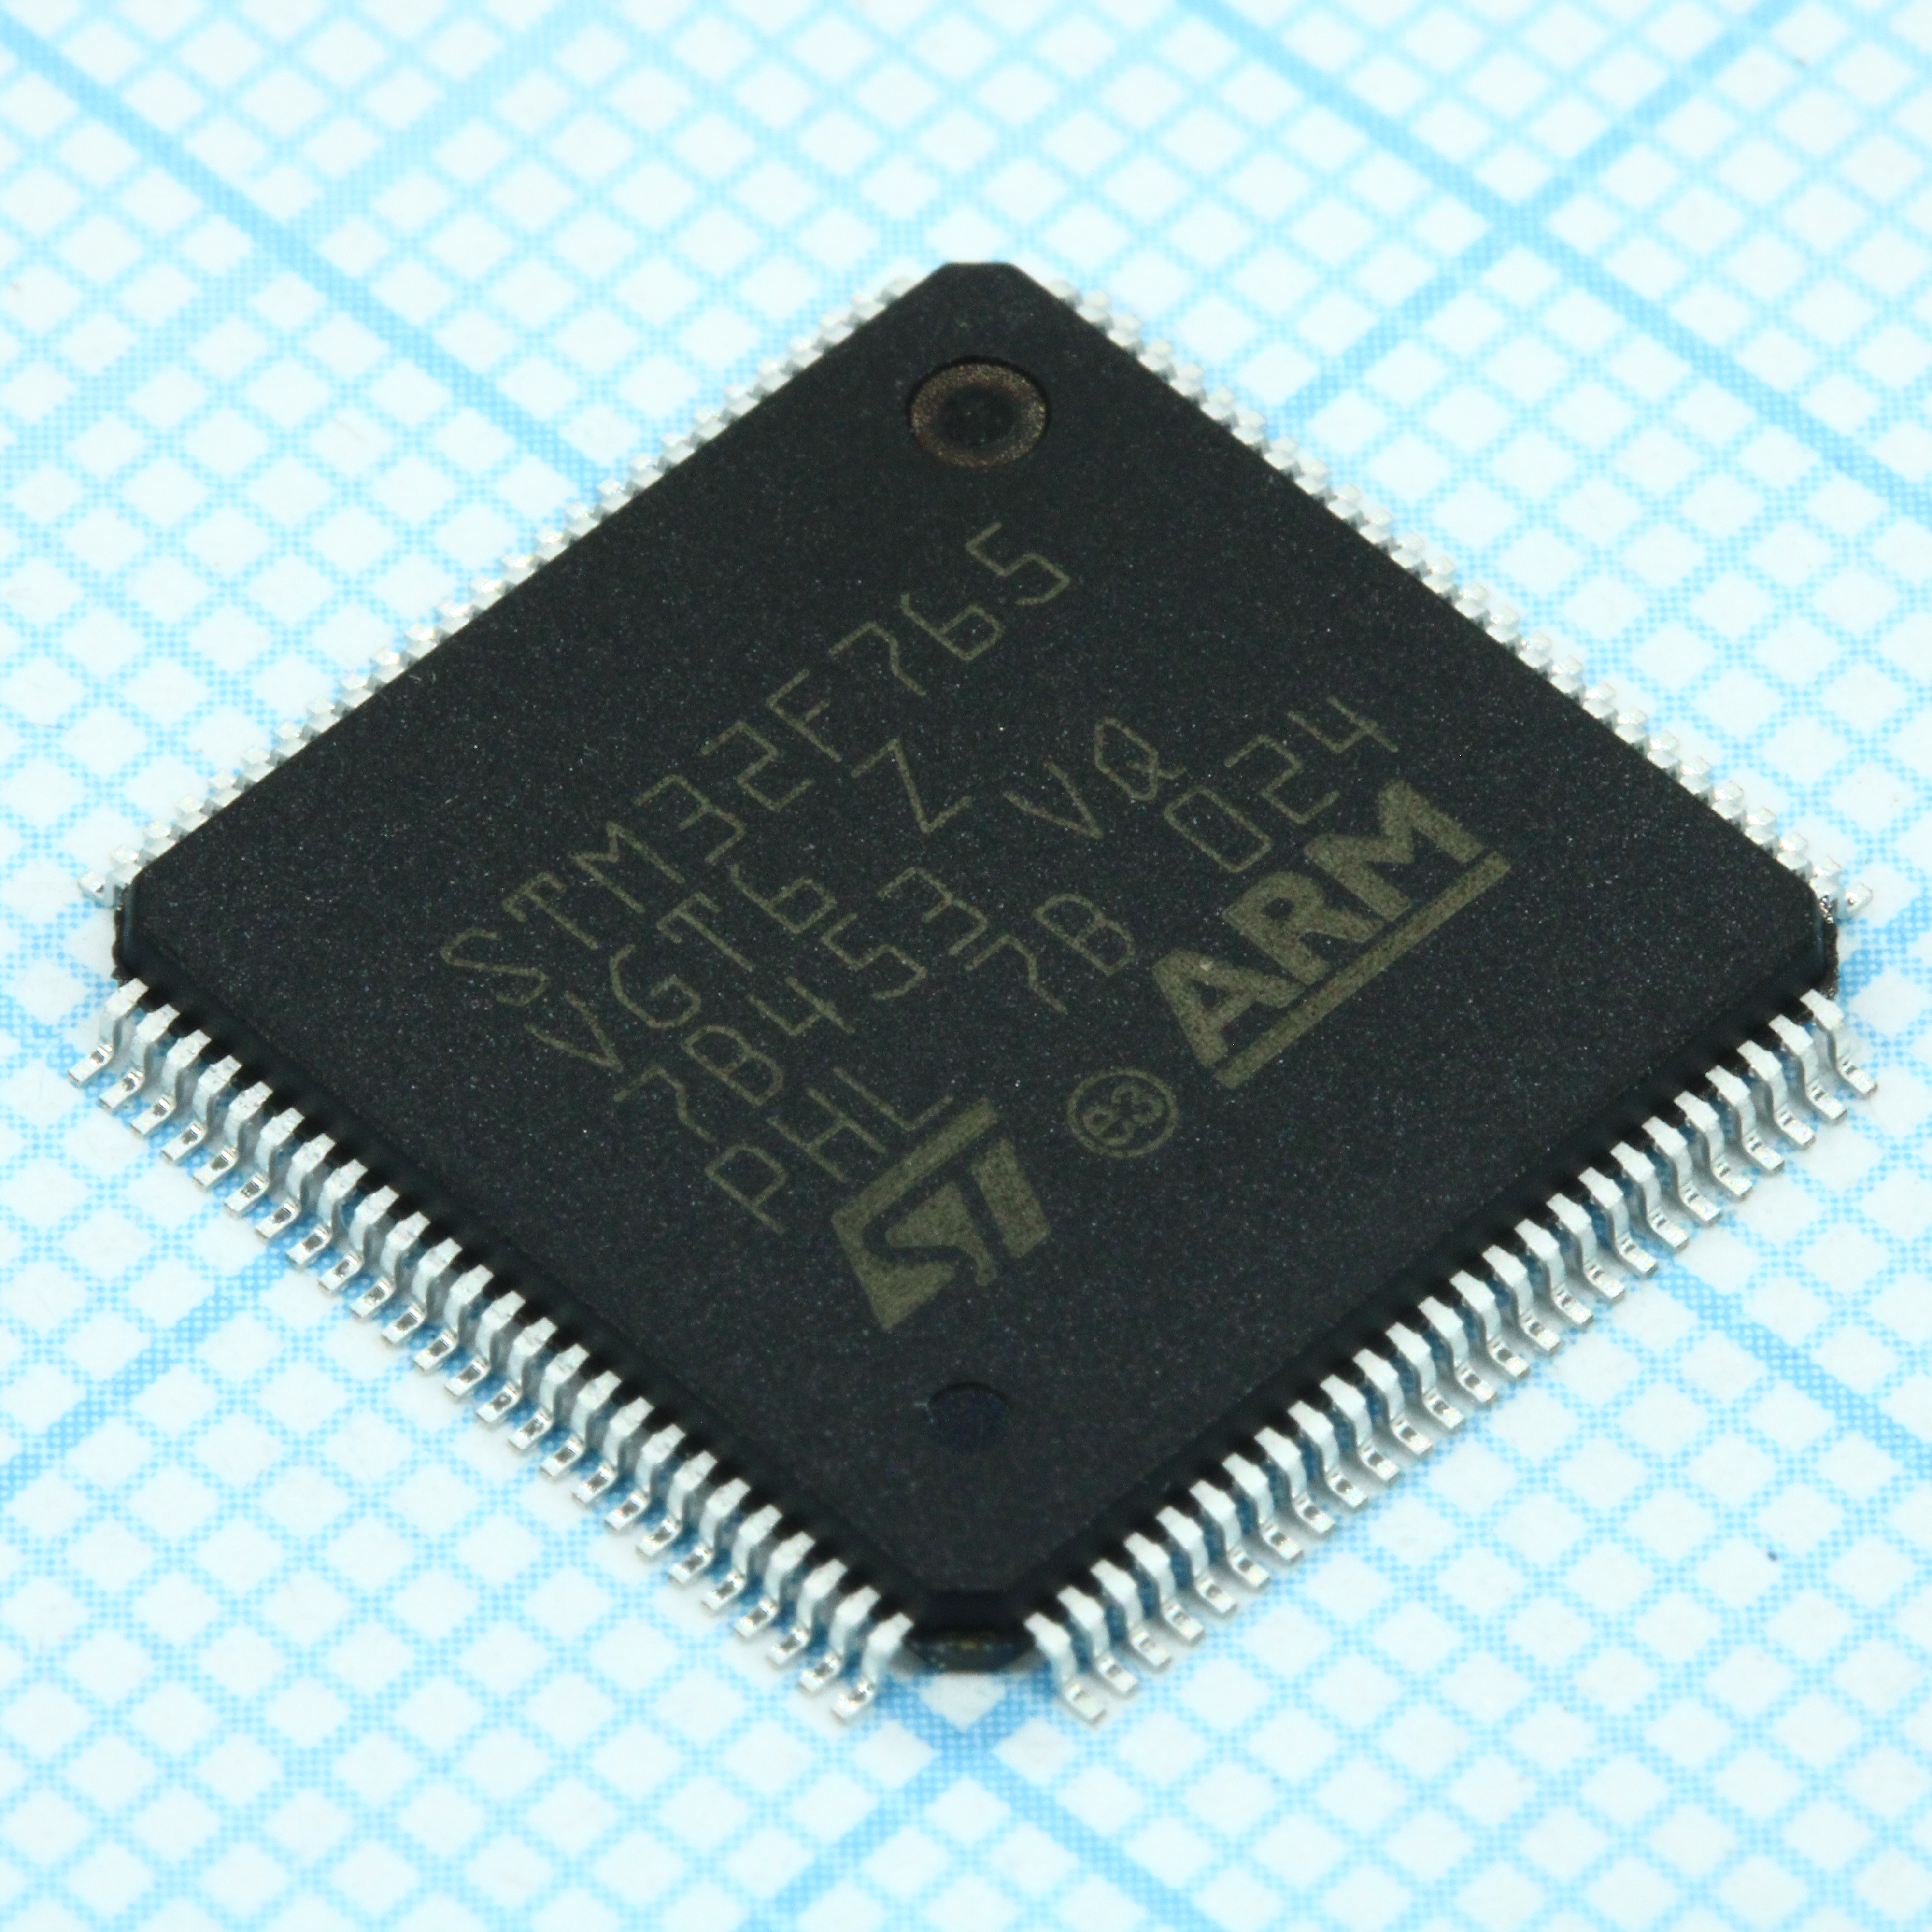 STM32F765VGT6